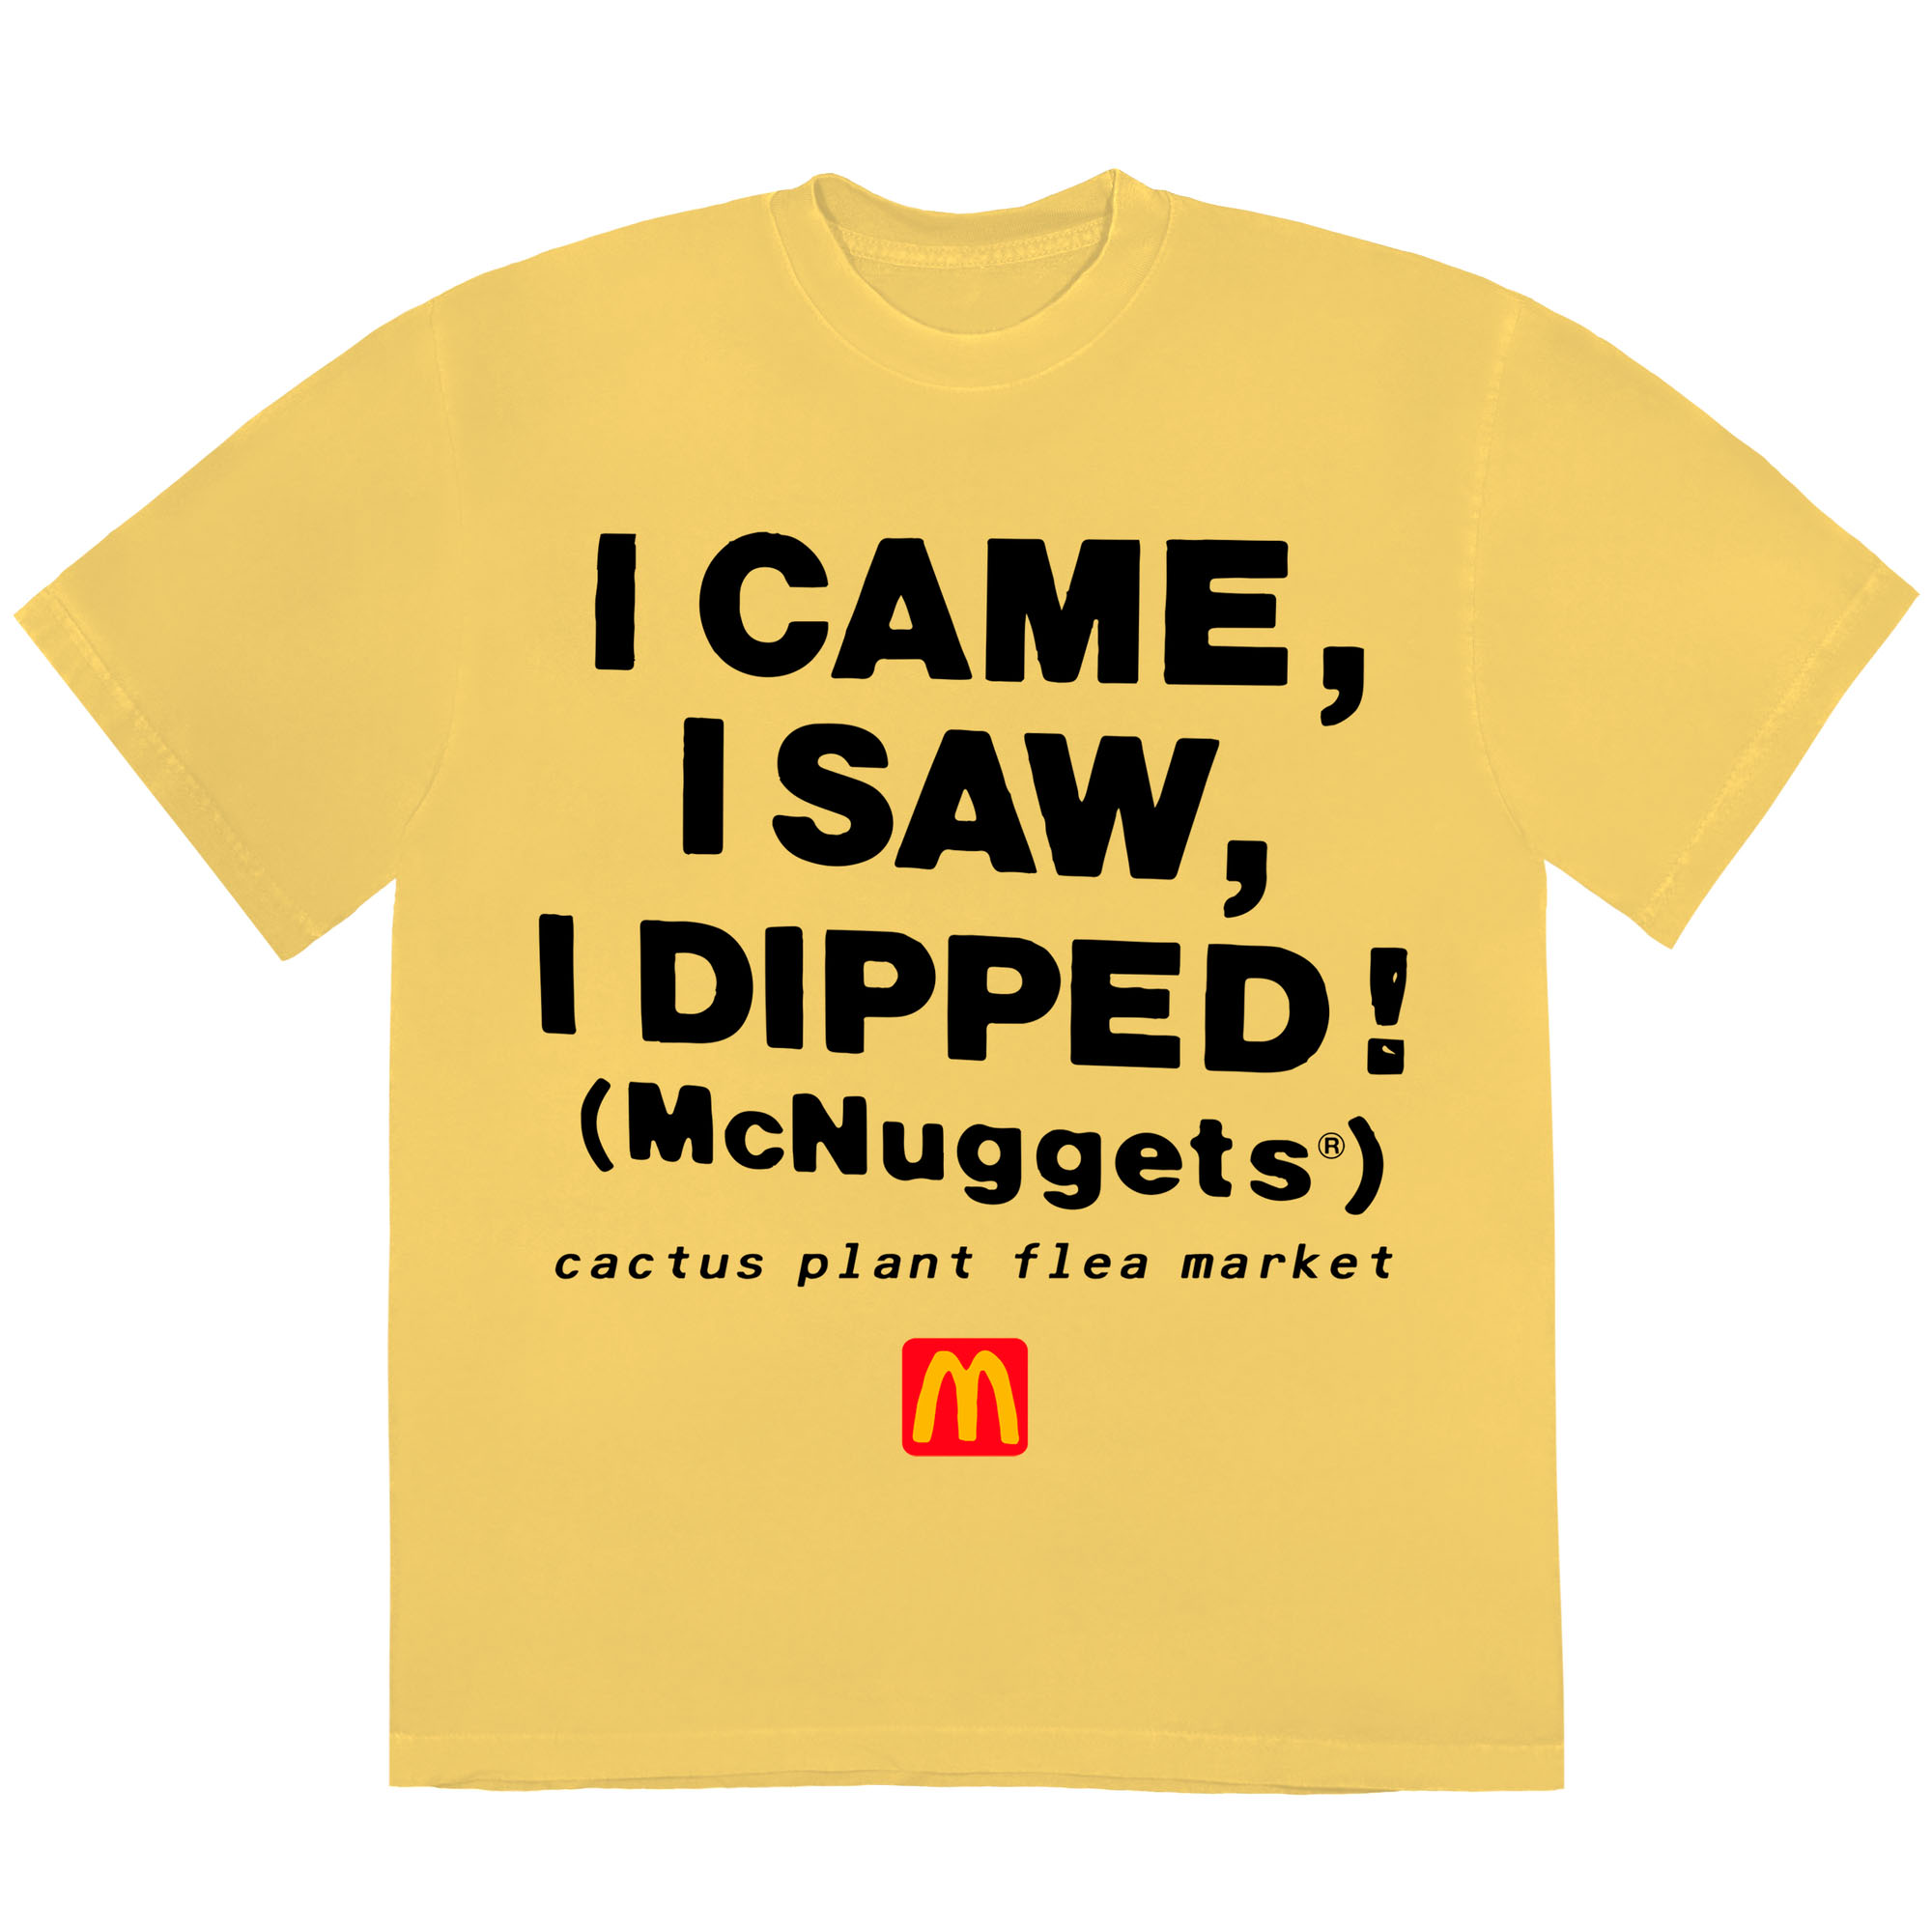 Cactus Plant Flea Market x McDonald's Team Mcnuggets T-shirt 